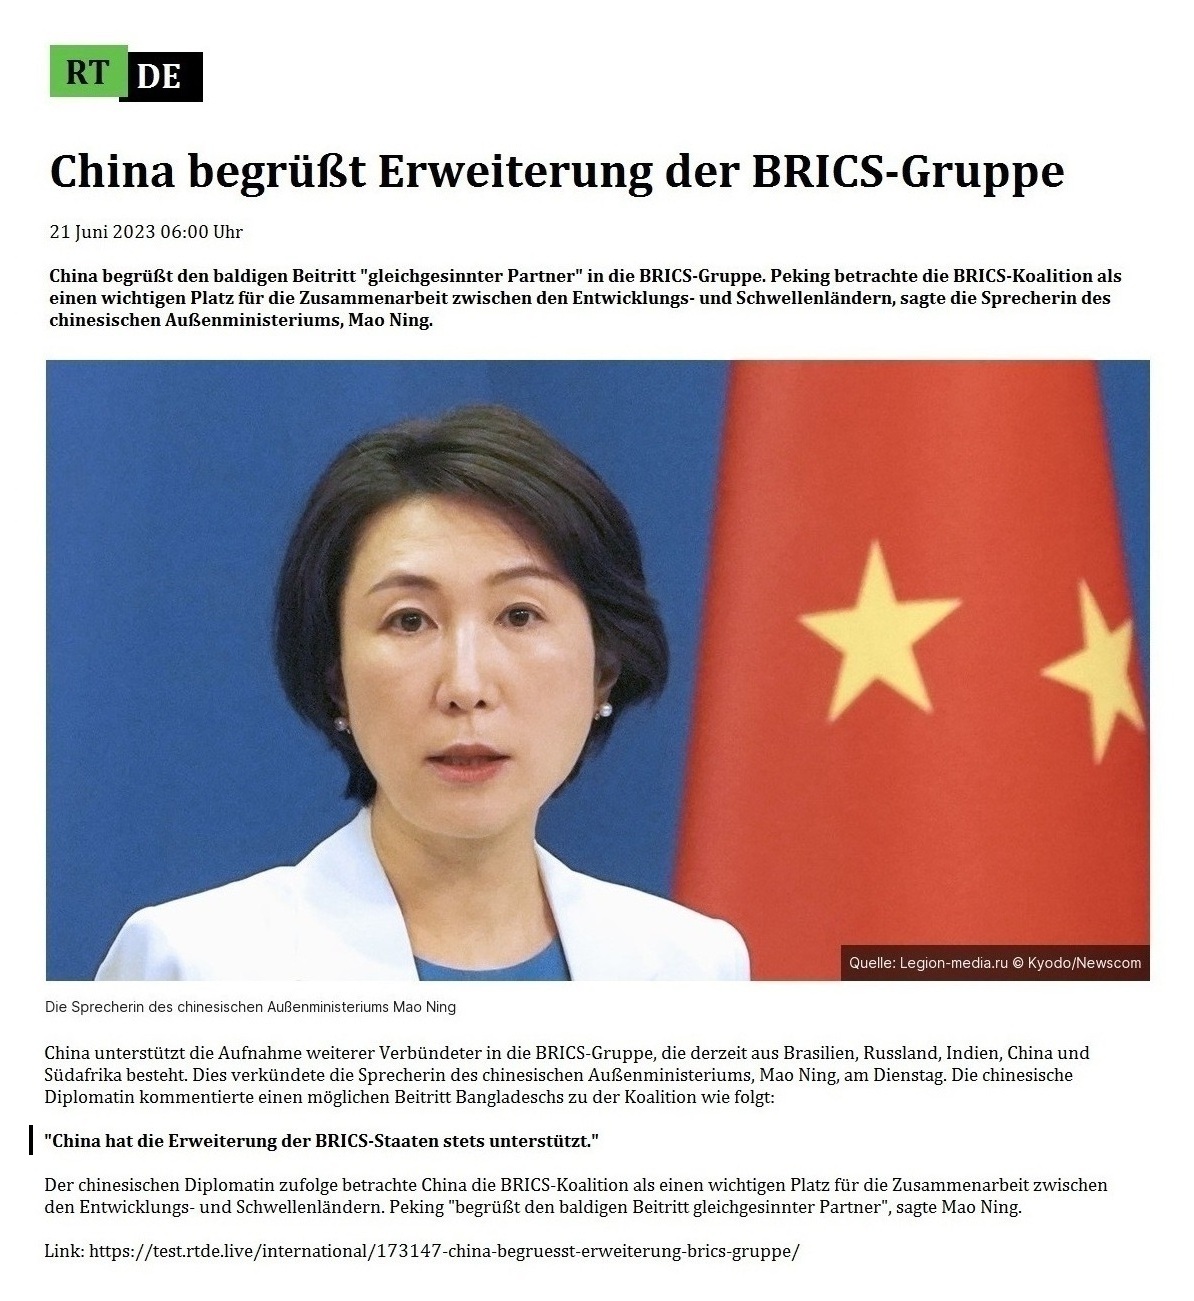 China begrüßt Erweiterung der BRICS-Gruppe - 21 Juni 2023 06:00 Uhr - China begrüßt den baldigen Beitritt 'gleichgesinnter Partner' in die BRICS-Gruppe. Peking betrachte die BRICS-Koalition als einen wichtigen Platz für die Zusammenarbeit zwischen den Entwicklungs- und Schwellenländern, sagte die Sprecherin des chinesischen Außenministeriums, Mao Ning. - 21 Juni 2023 06:00 Uhr - RT DE - Link: https://test.rtde.live/international/173147-china-begruesst-erweiterung-brics-gruppe/